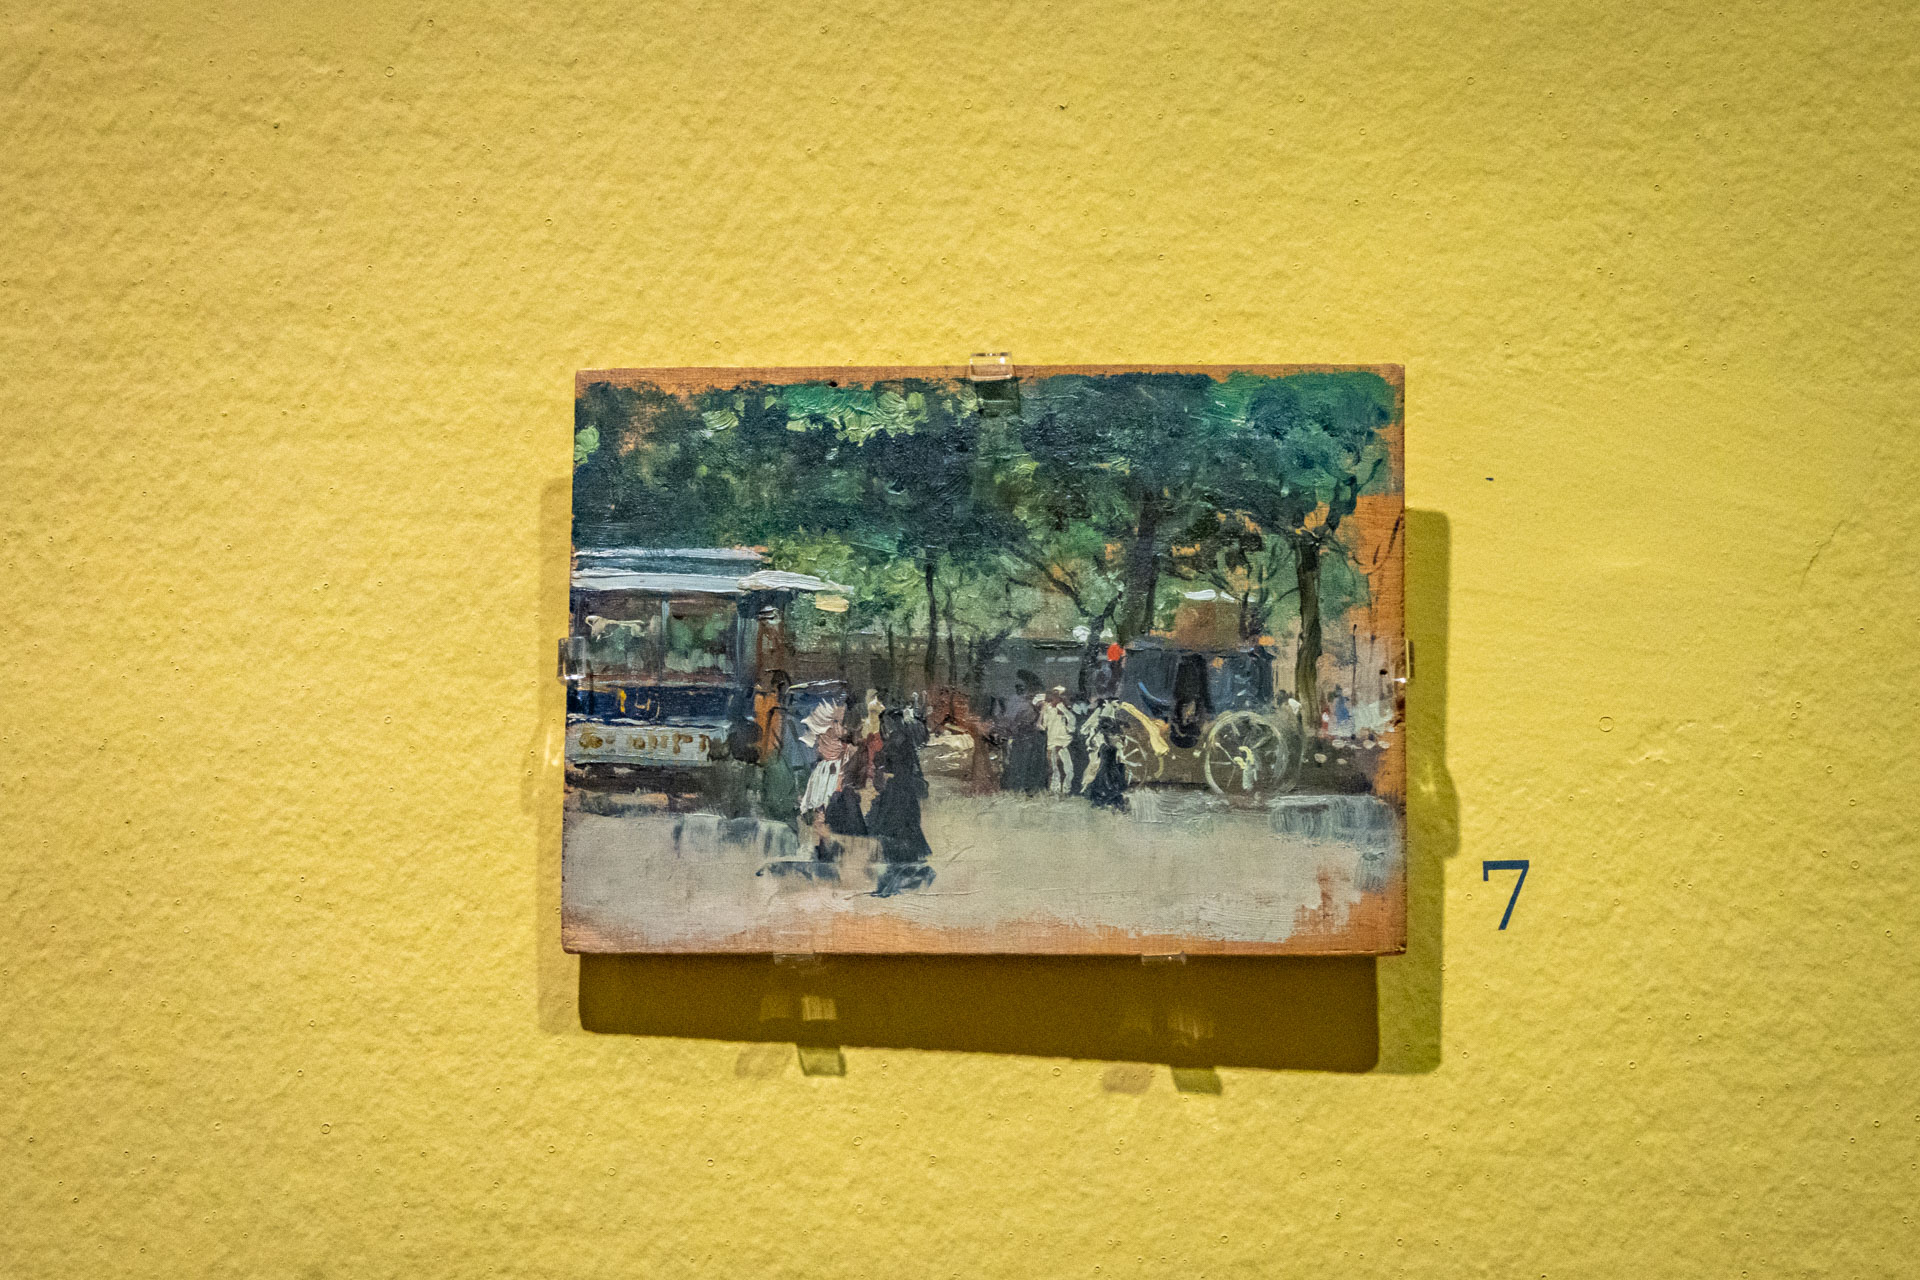 Miniatuurschilderij van Sorolla met daarop een stel dat over een weggetje loopt met groene bomen erlangs